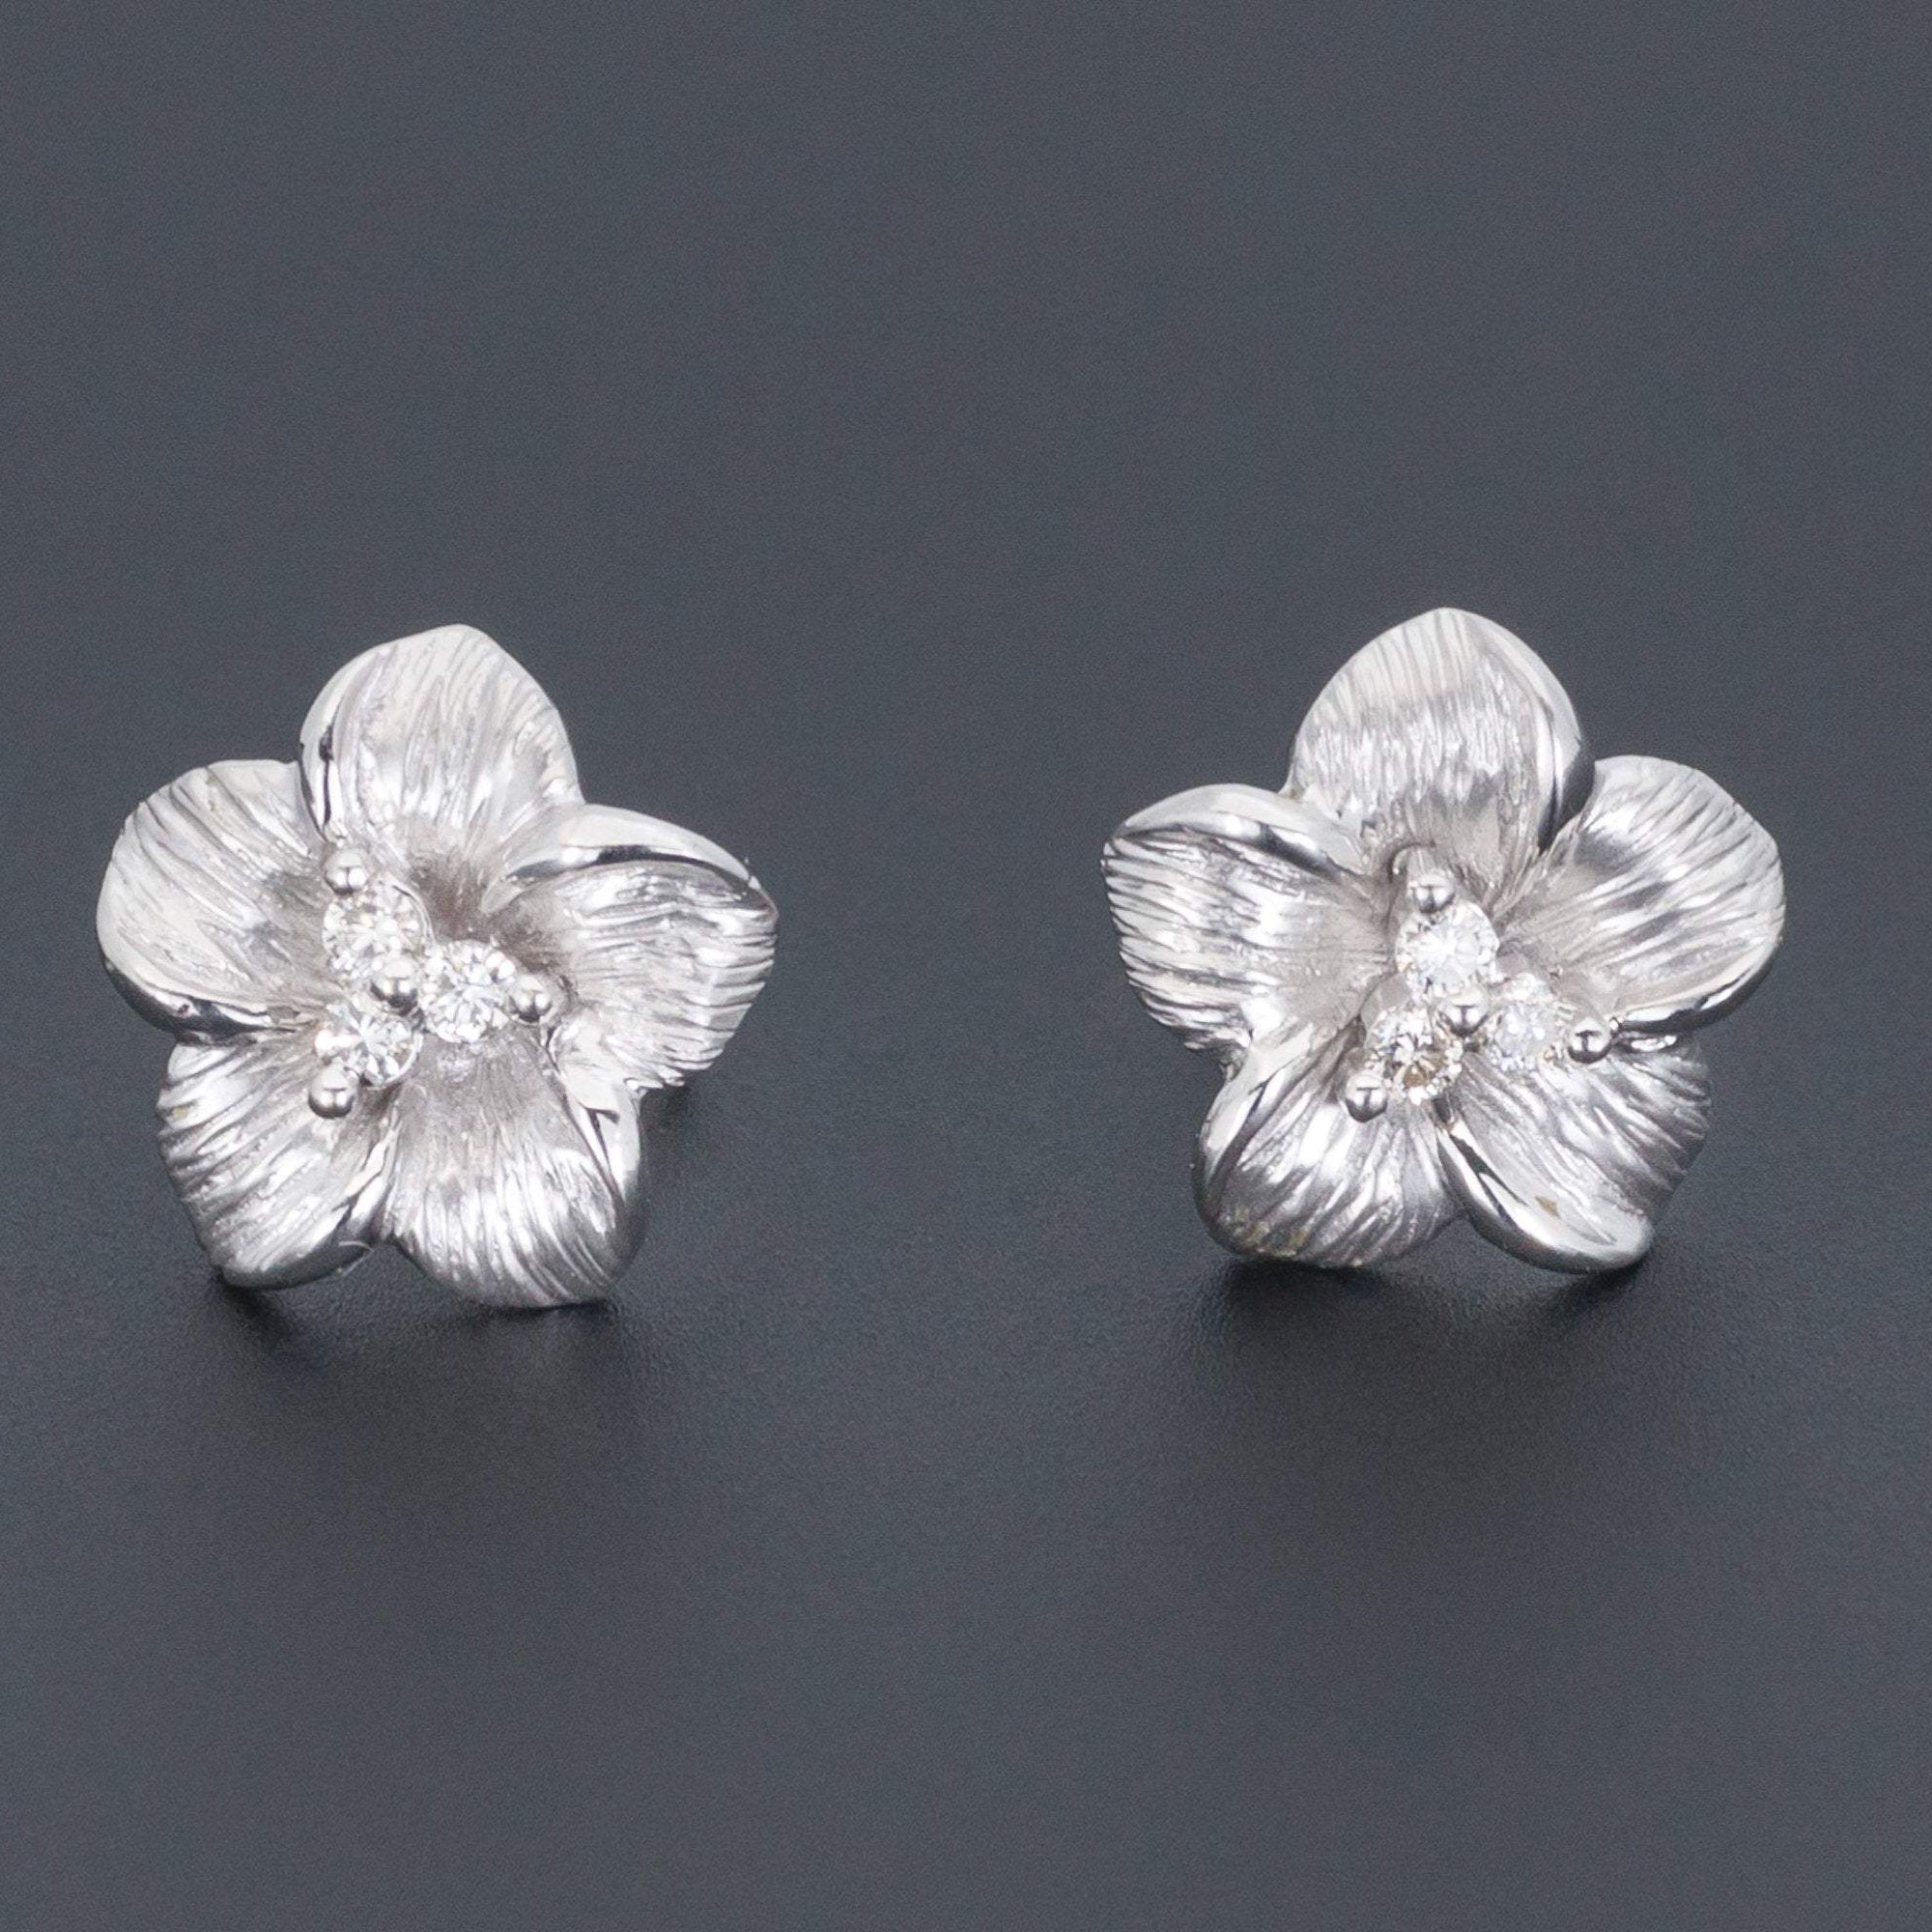 White Gold Flower Earrings | Vintage Diamond Flower Earrings | 14k White Gold Earrings | Diamond Earrings